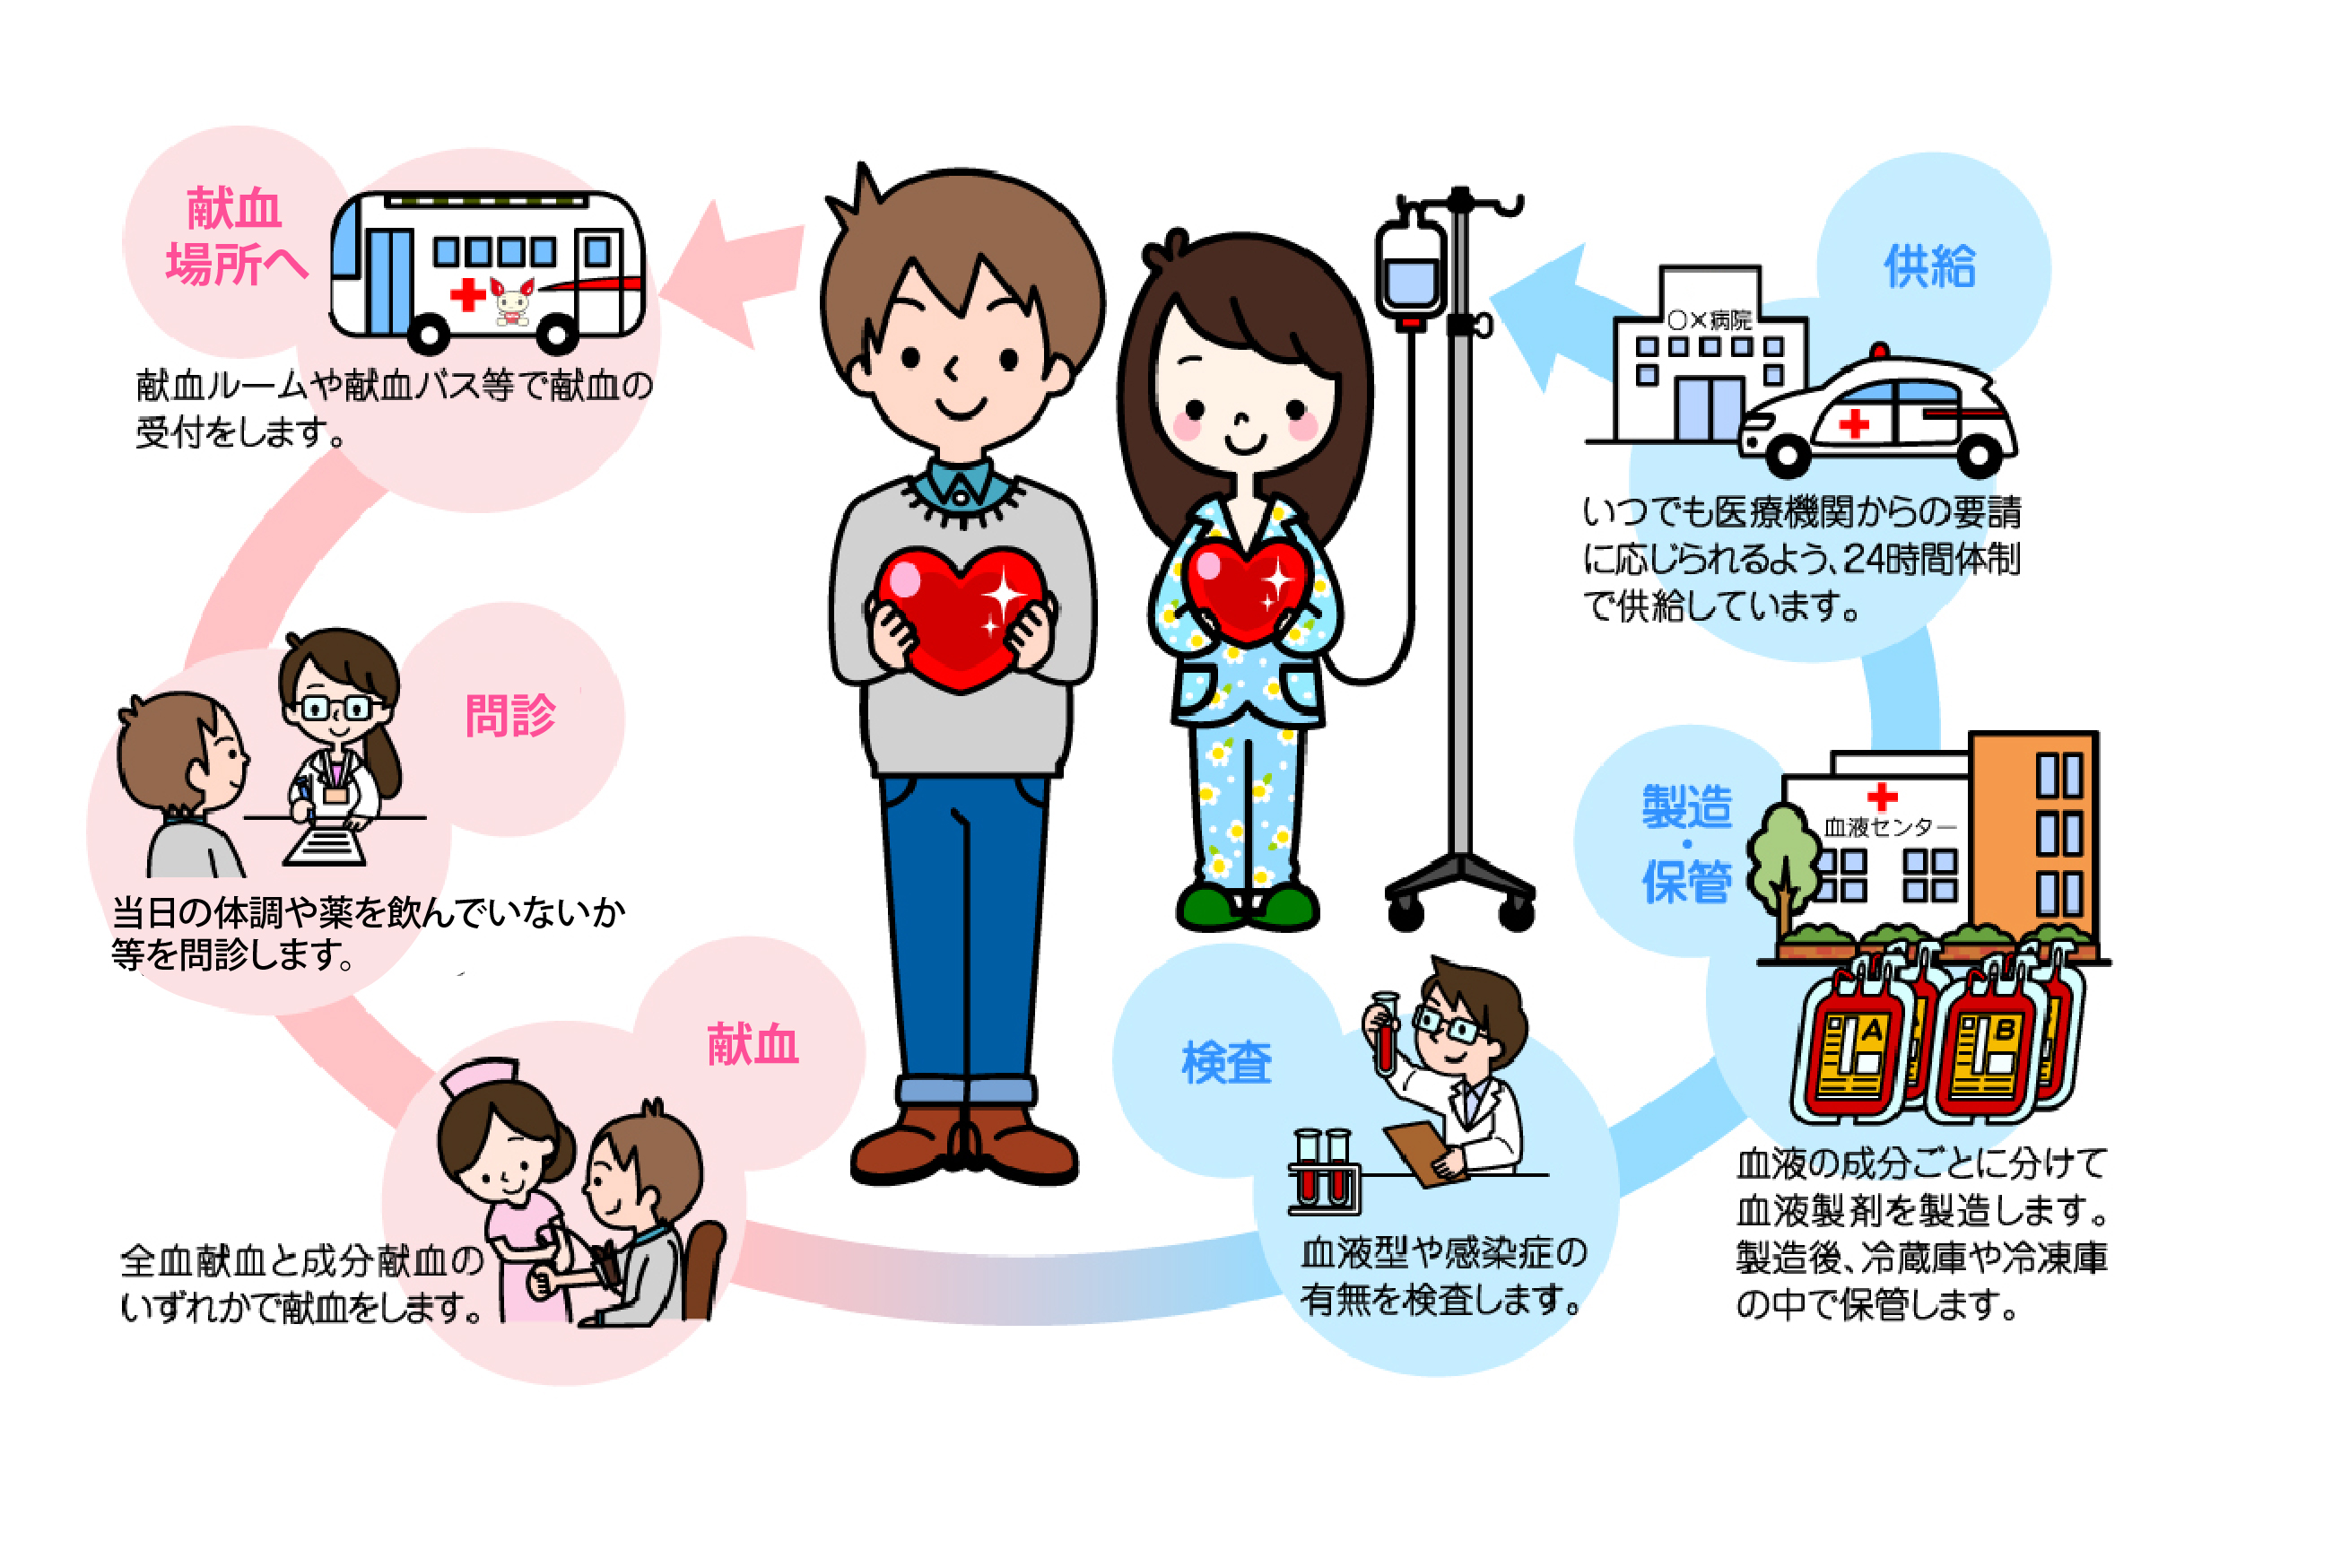 血液のゆくえ 初めて献血される方へ 献血する 日本赤十字社